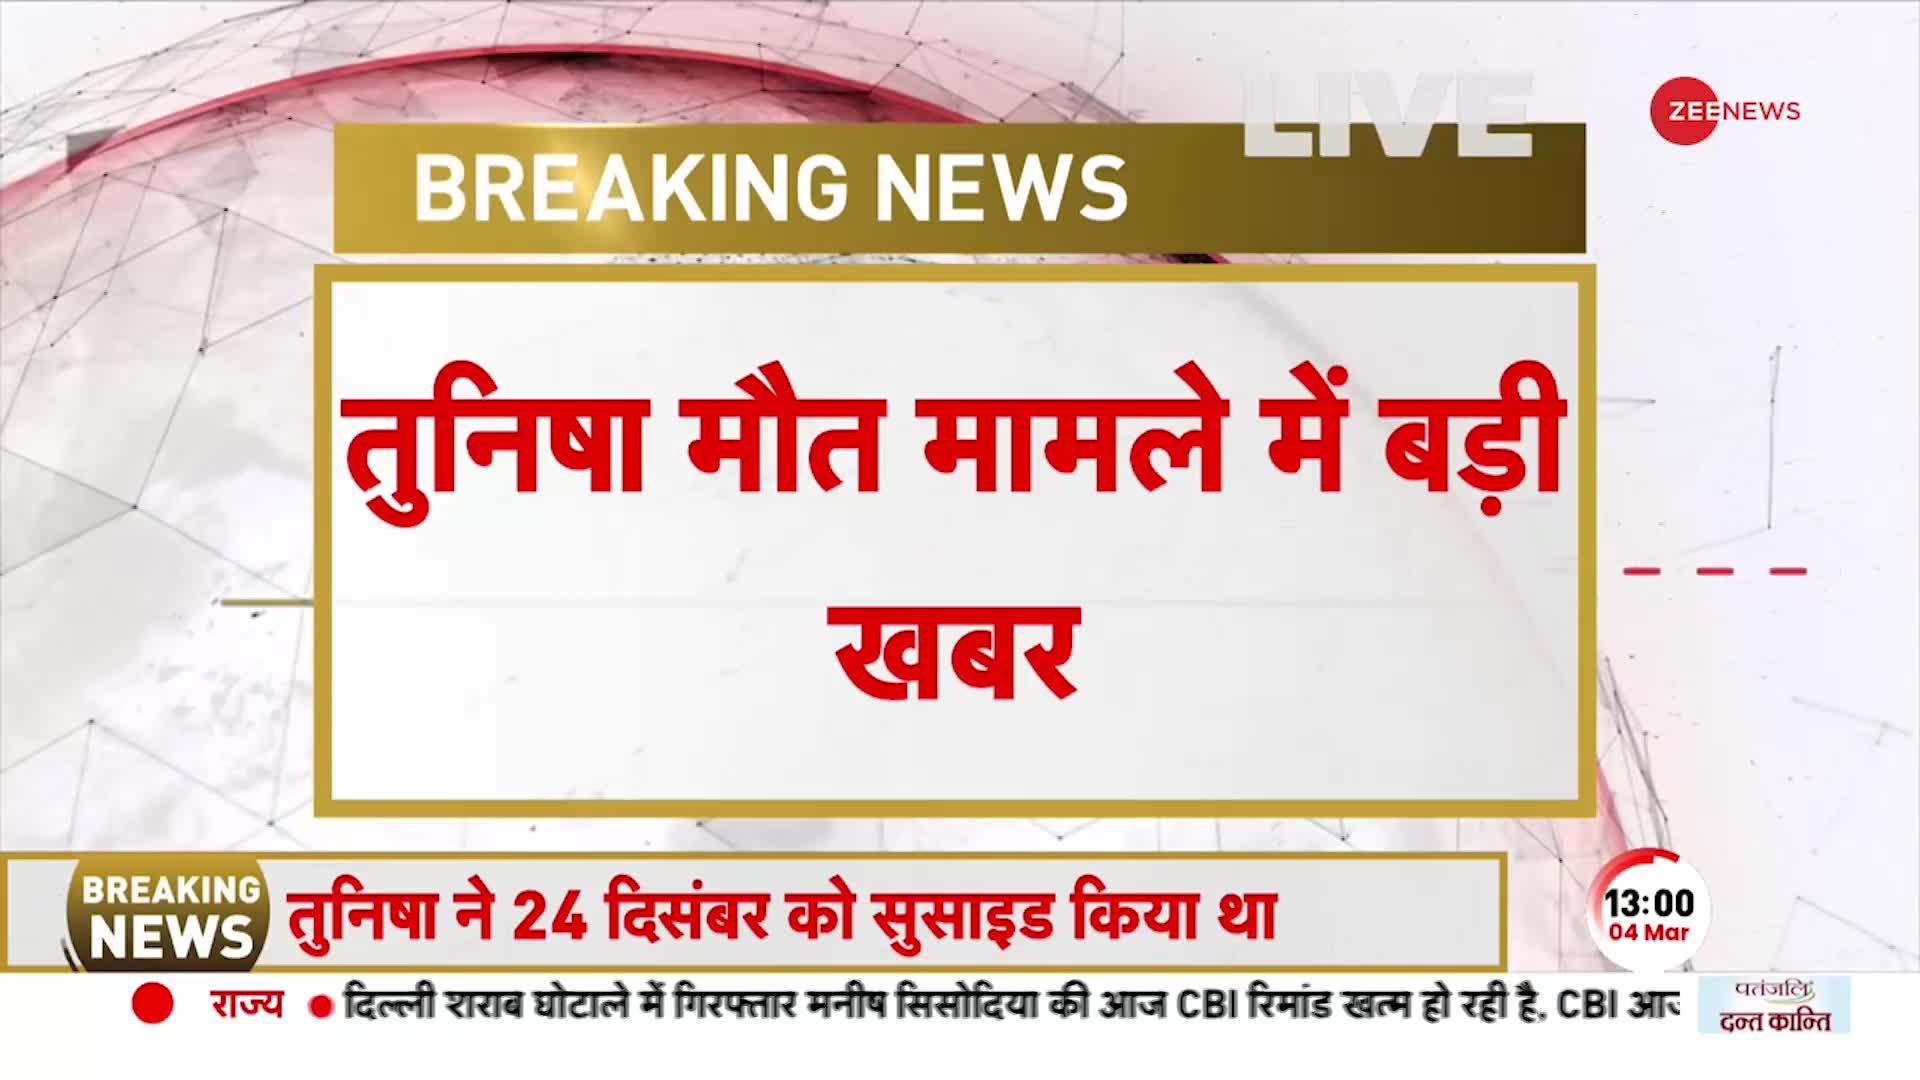 Breaking News: तुनिषा शर्मा केस पर बड़ा अपडेट, आरोपी शीजान खान को मिली जमानत